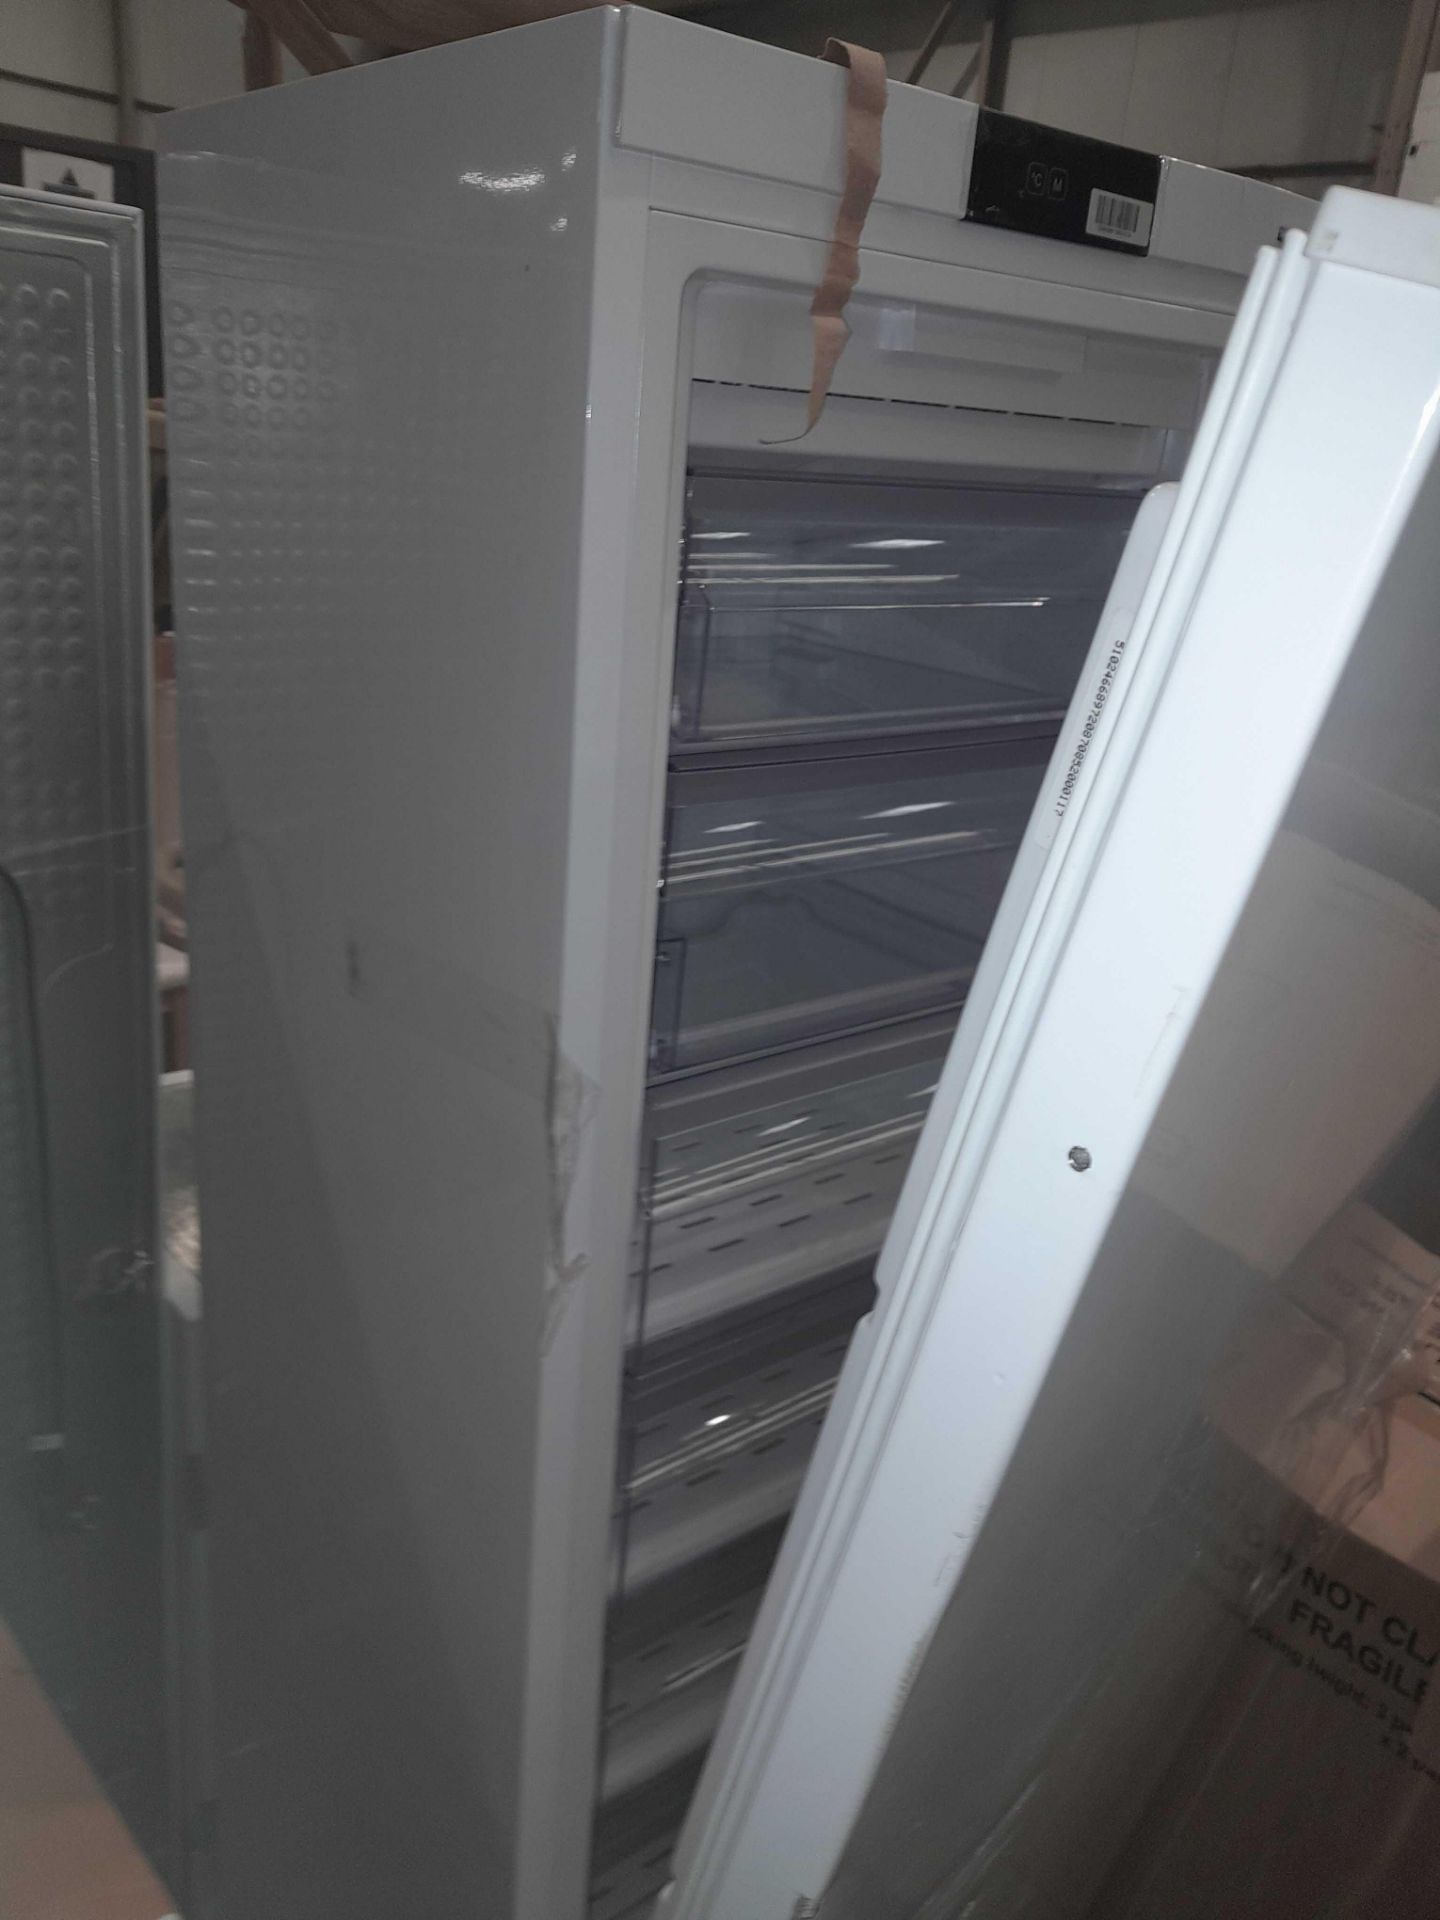 RRP £500 7 Drawer Freezer (CR3) - Image 2 of 2